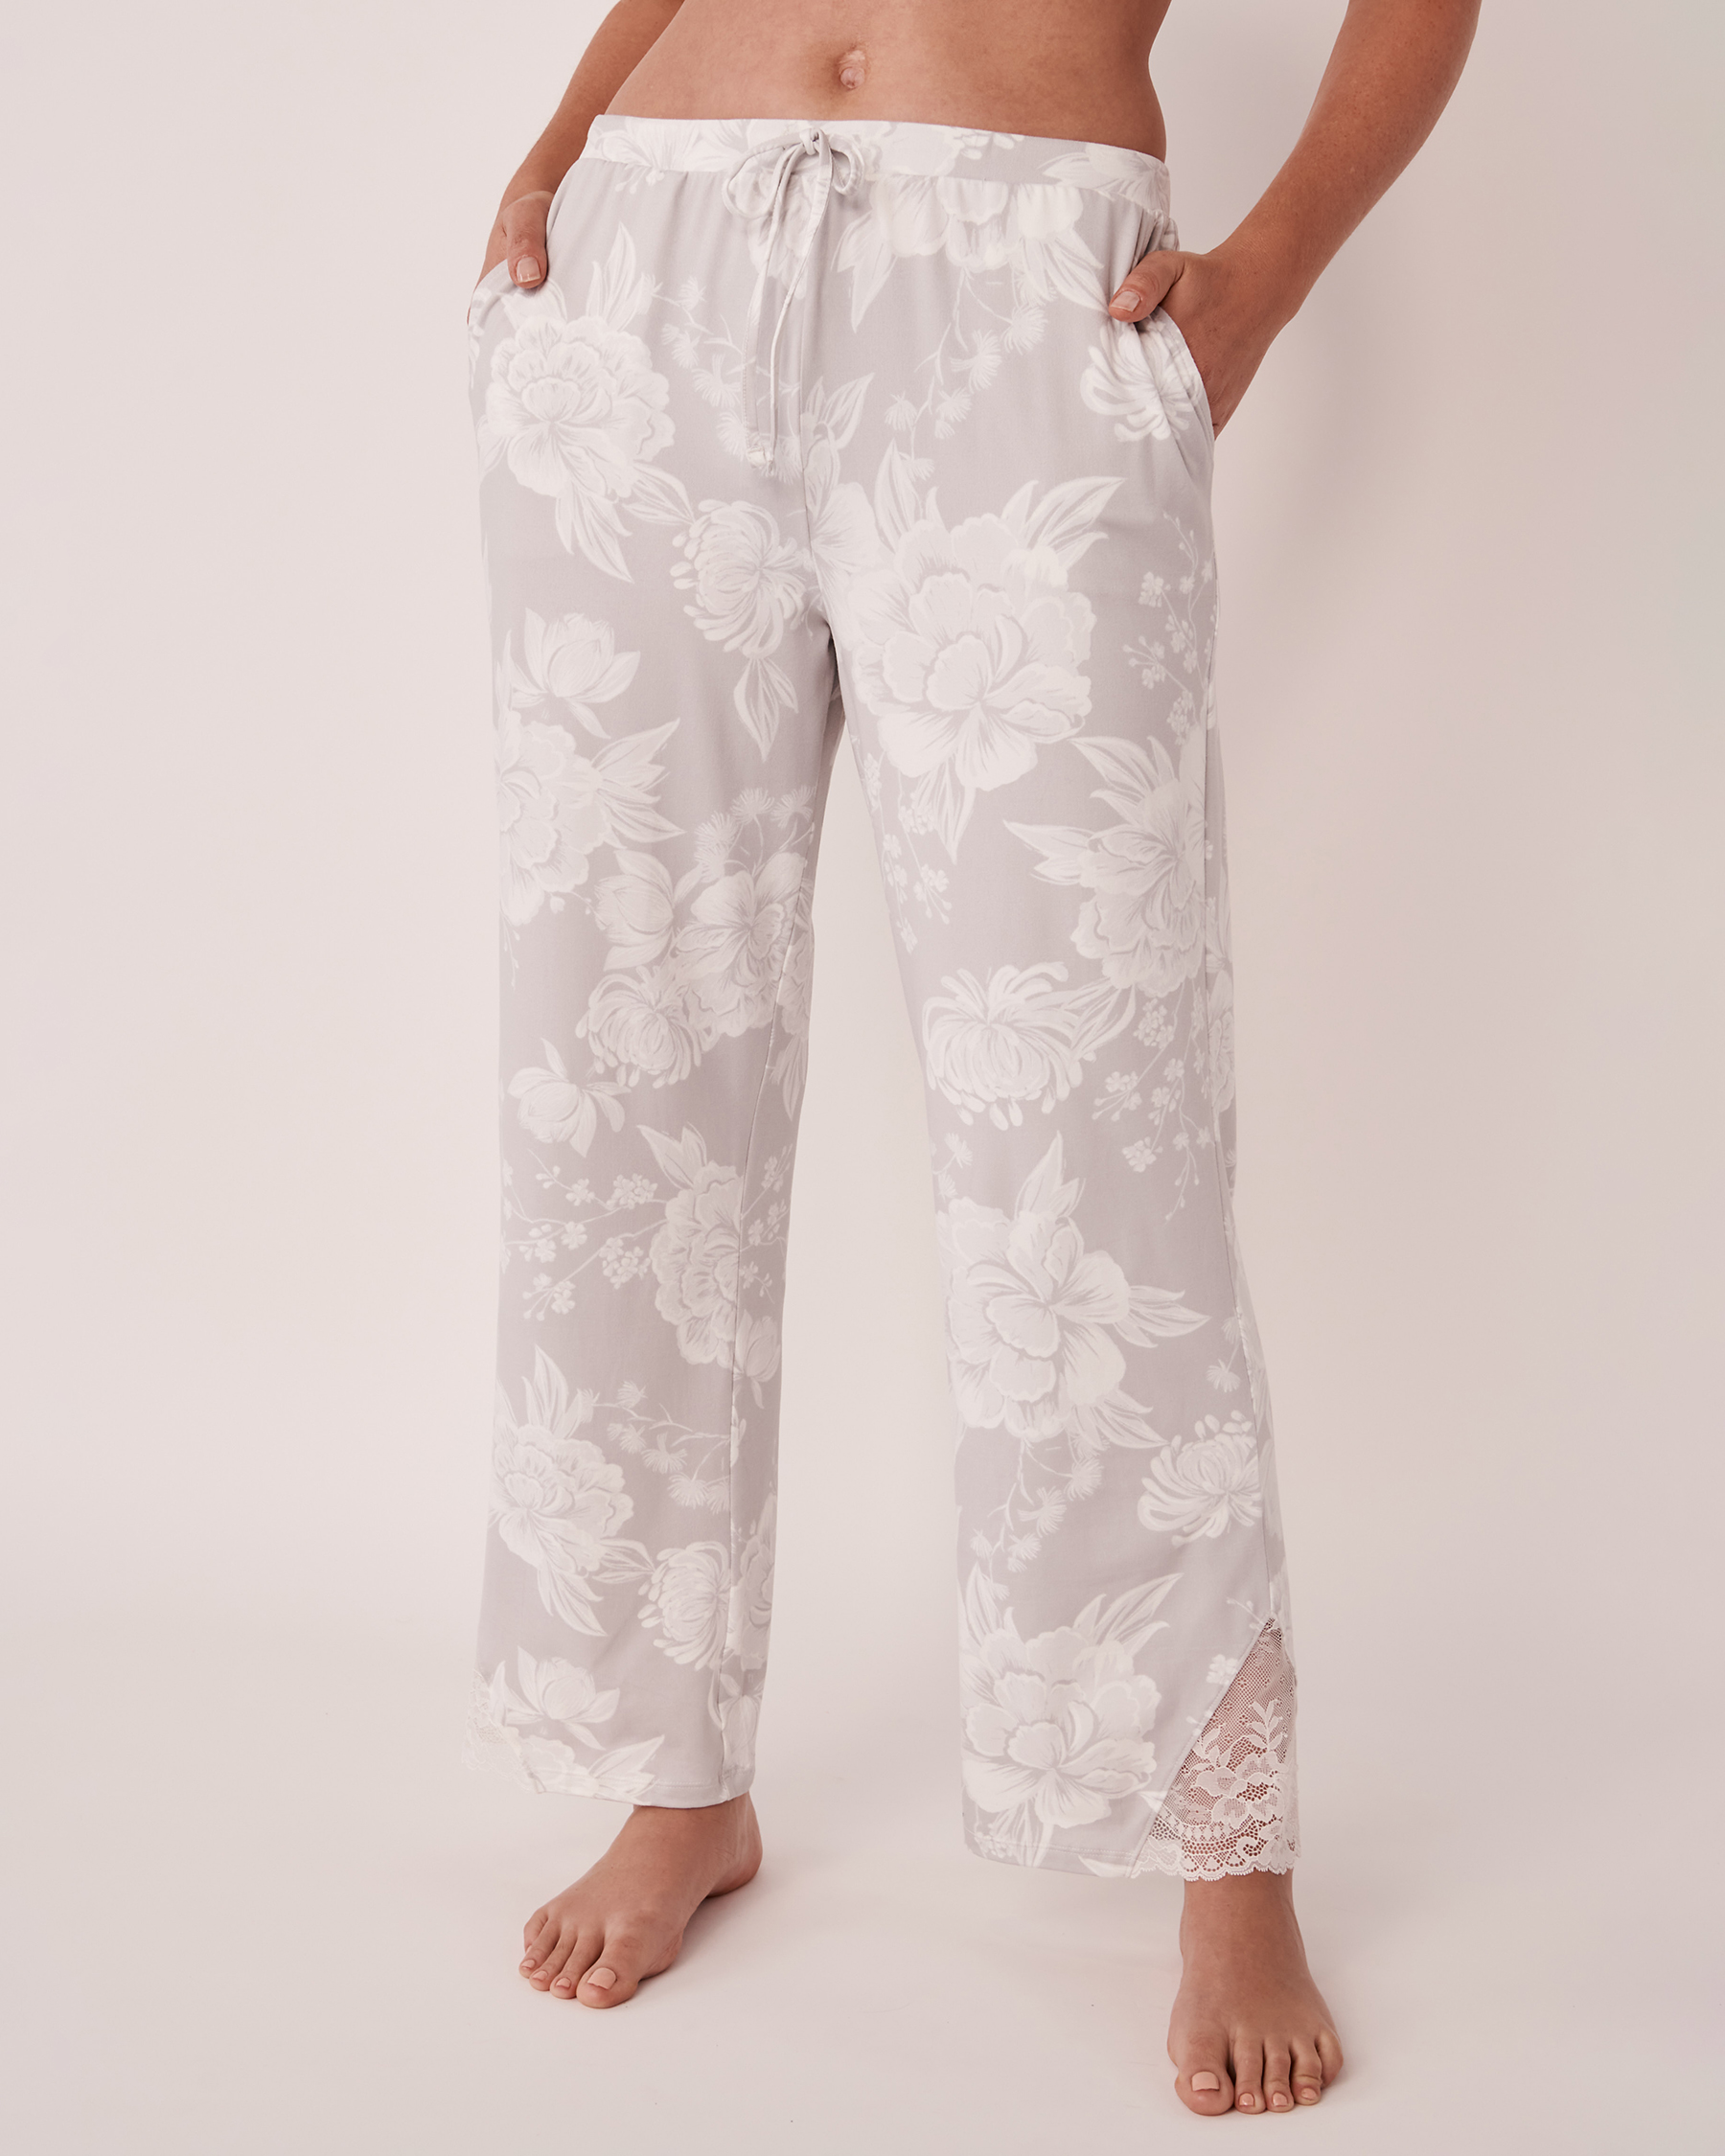 LA VIE EN ROSE Super Soft Lace Detail Pants Romantic grey floral 40200355 - View1